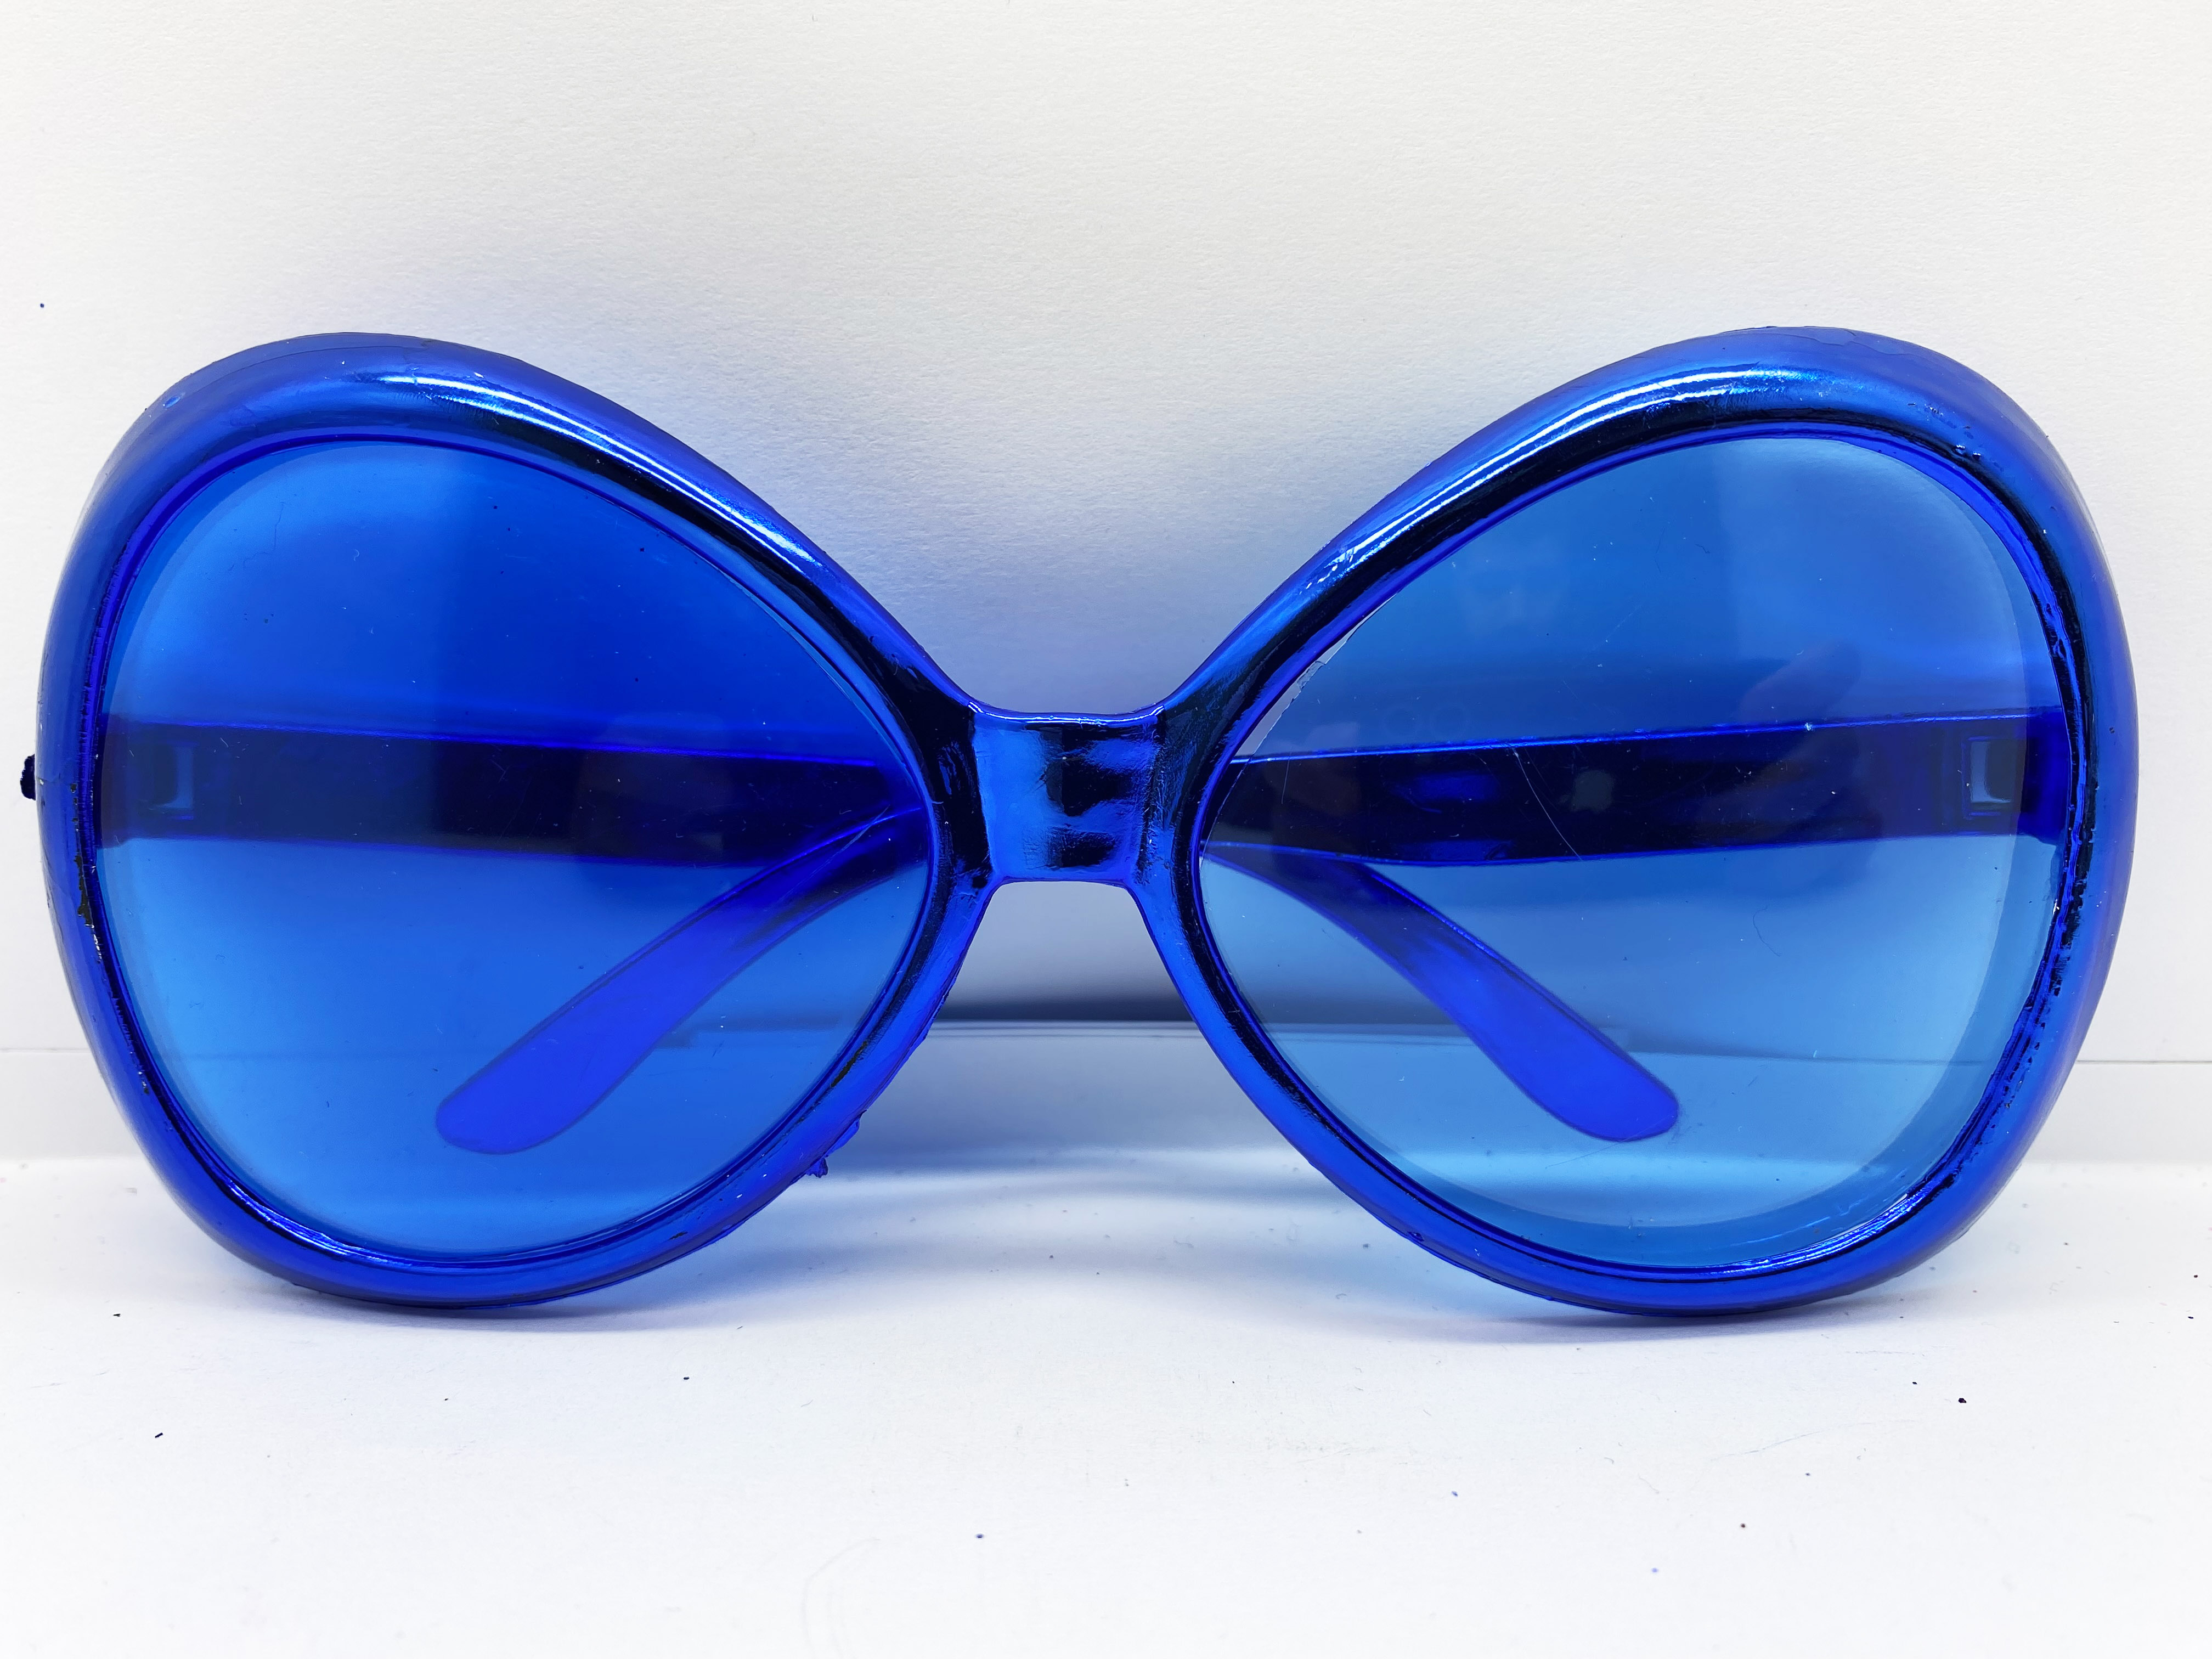 Yeşilçam Temalı Parti Gözlüğü Mavi Renk 7x16 cm (CLZ)